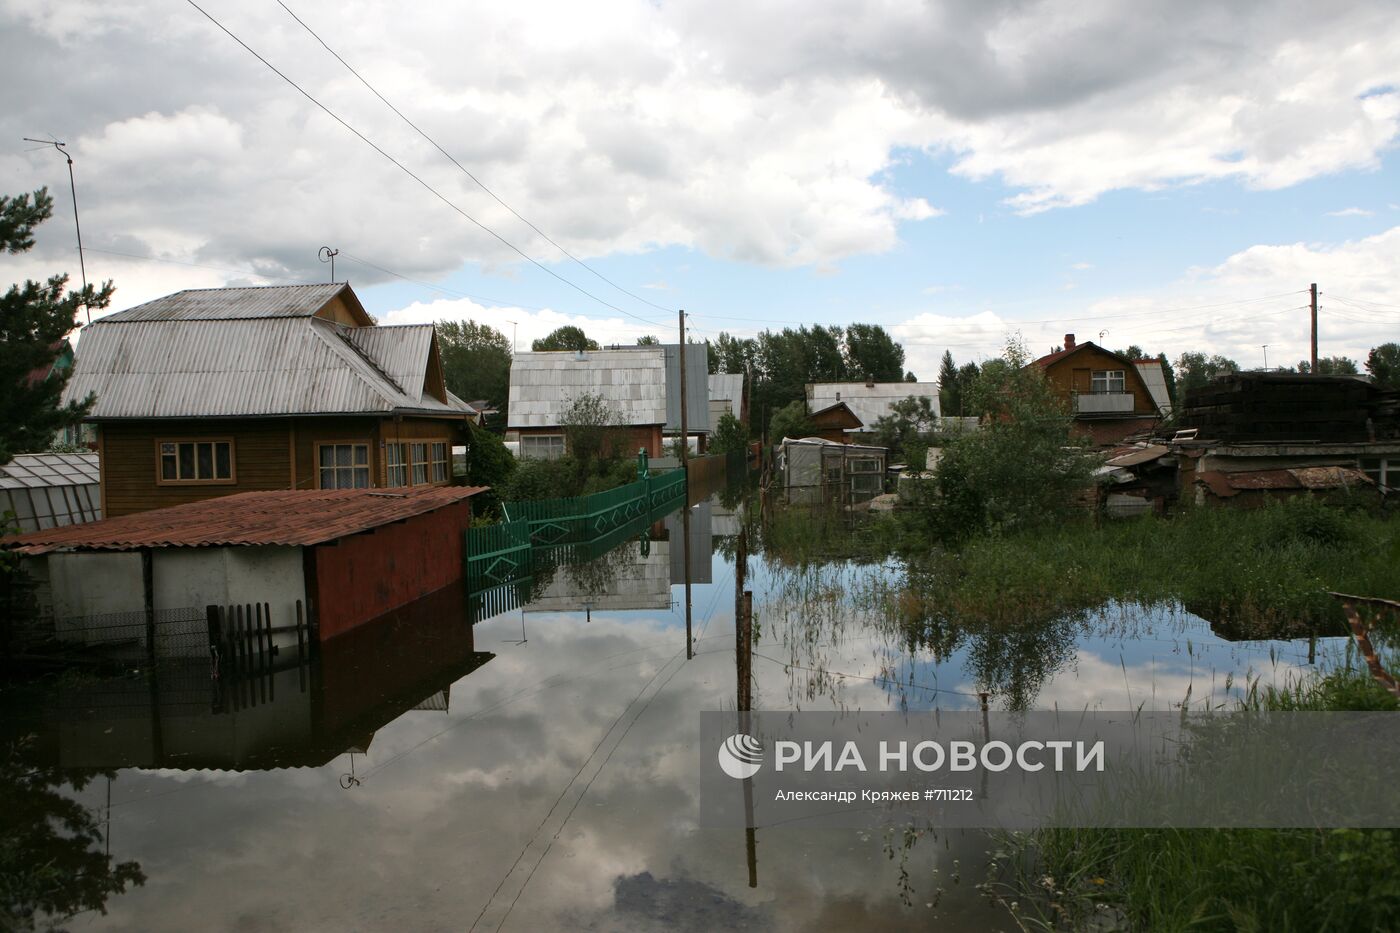 Подтопленные дачные участки в черте Новосибирска